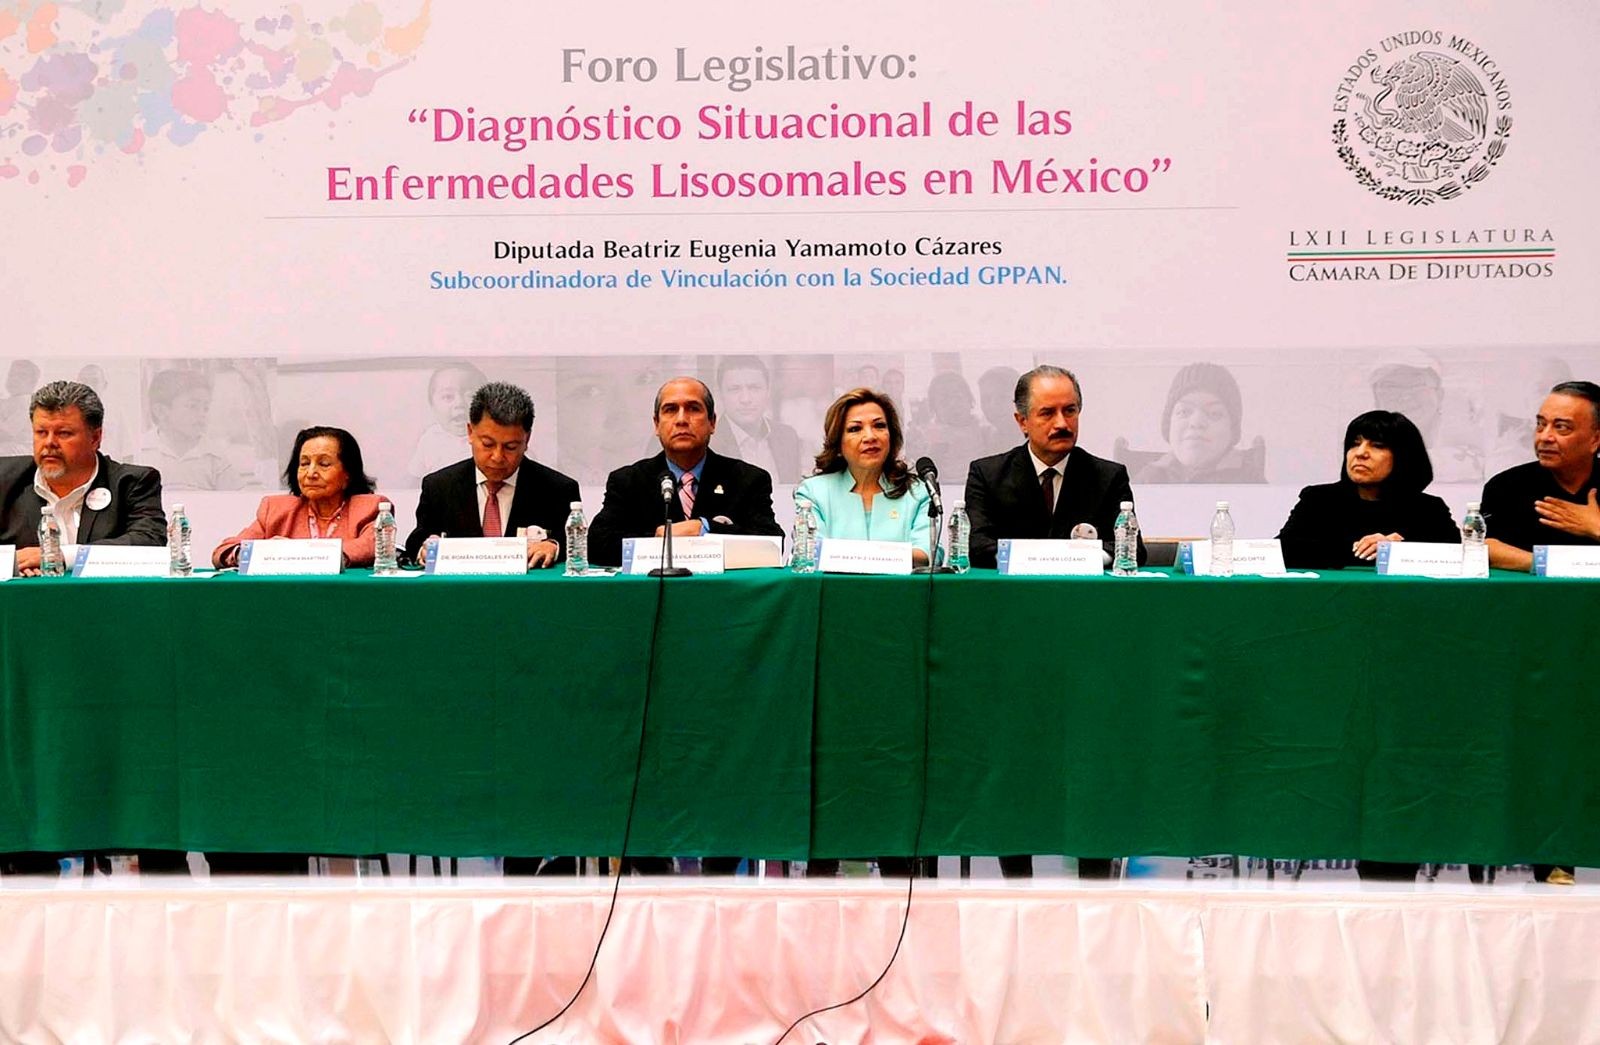 Diputados en mesa de trabajo al fondo un letrero foro “Diagnóstico situacional de las enfermedades lisosomales en México”